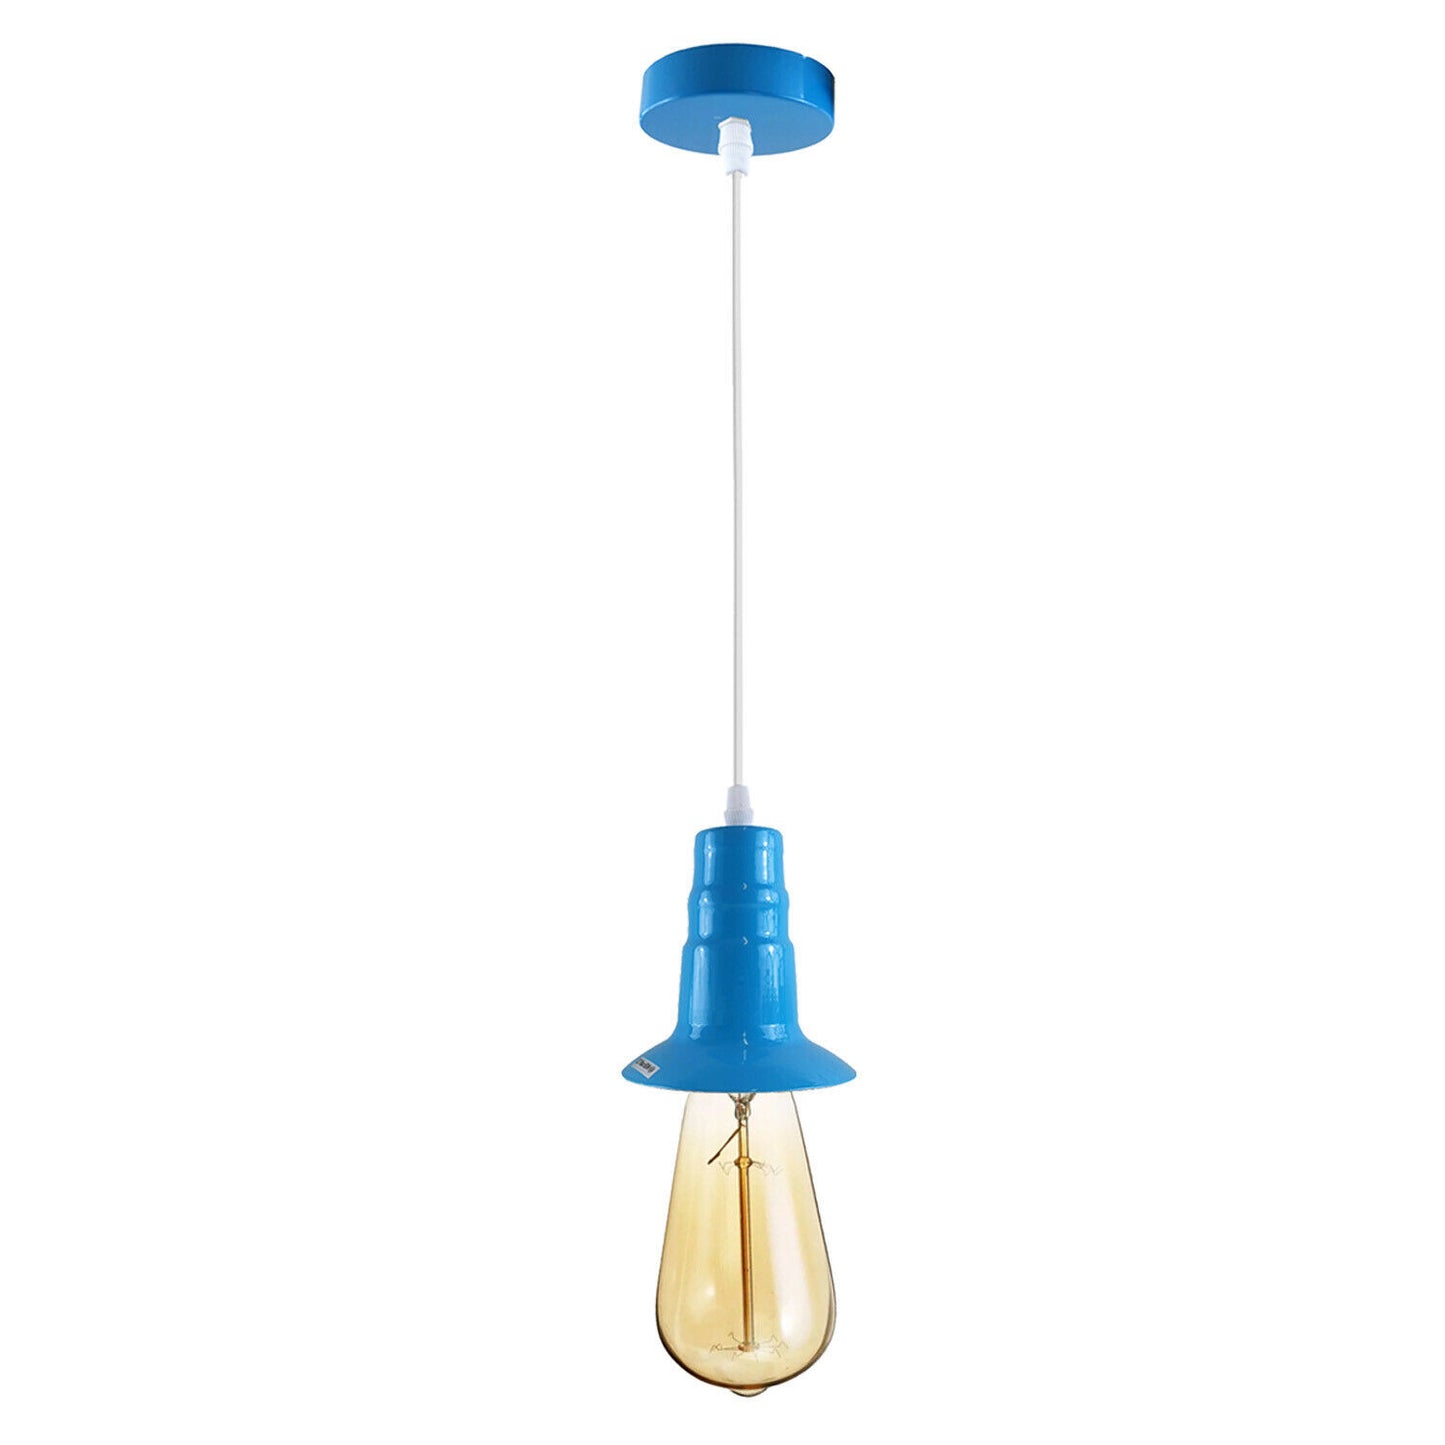 Blue Industrial Ceiling E27 Base Fitting Lamp Holder Pendant